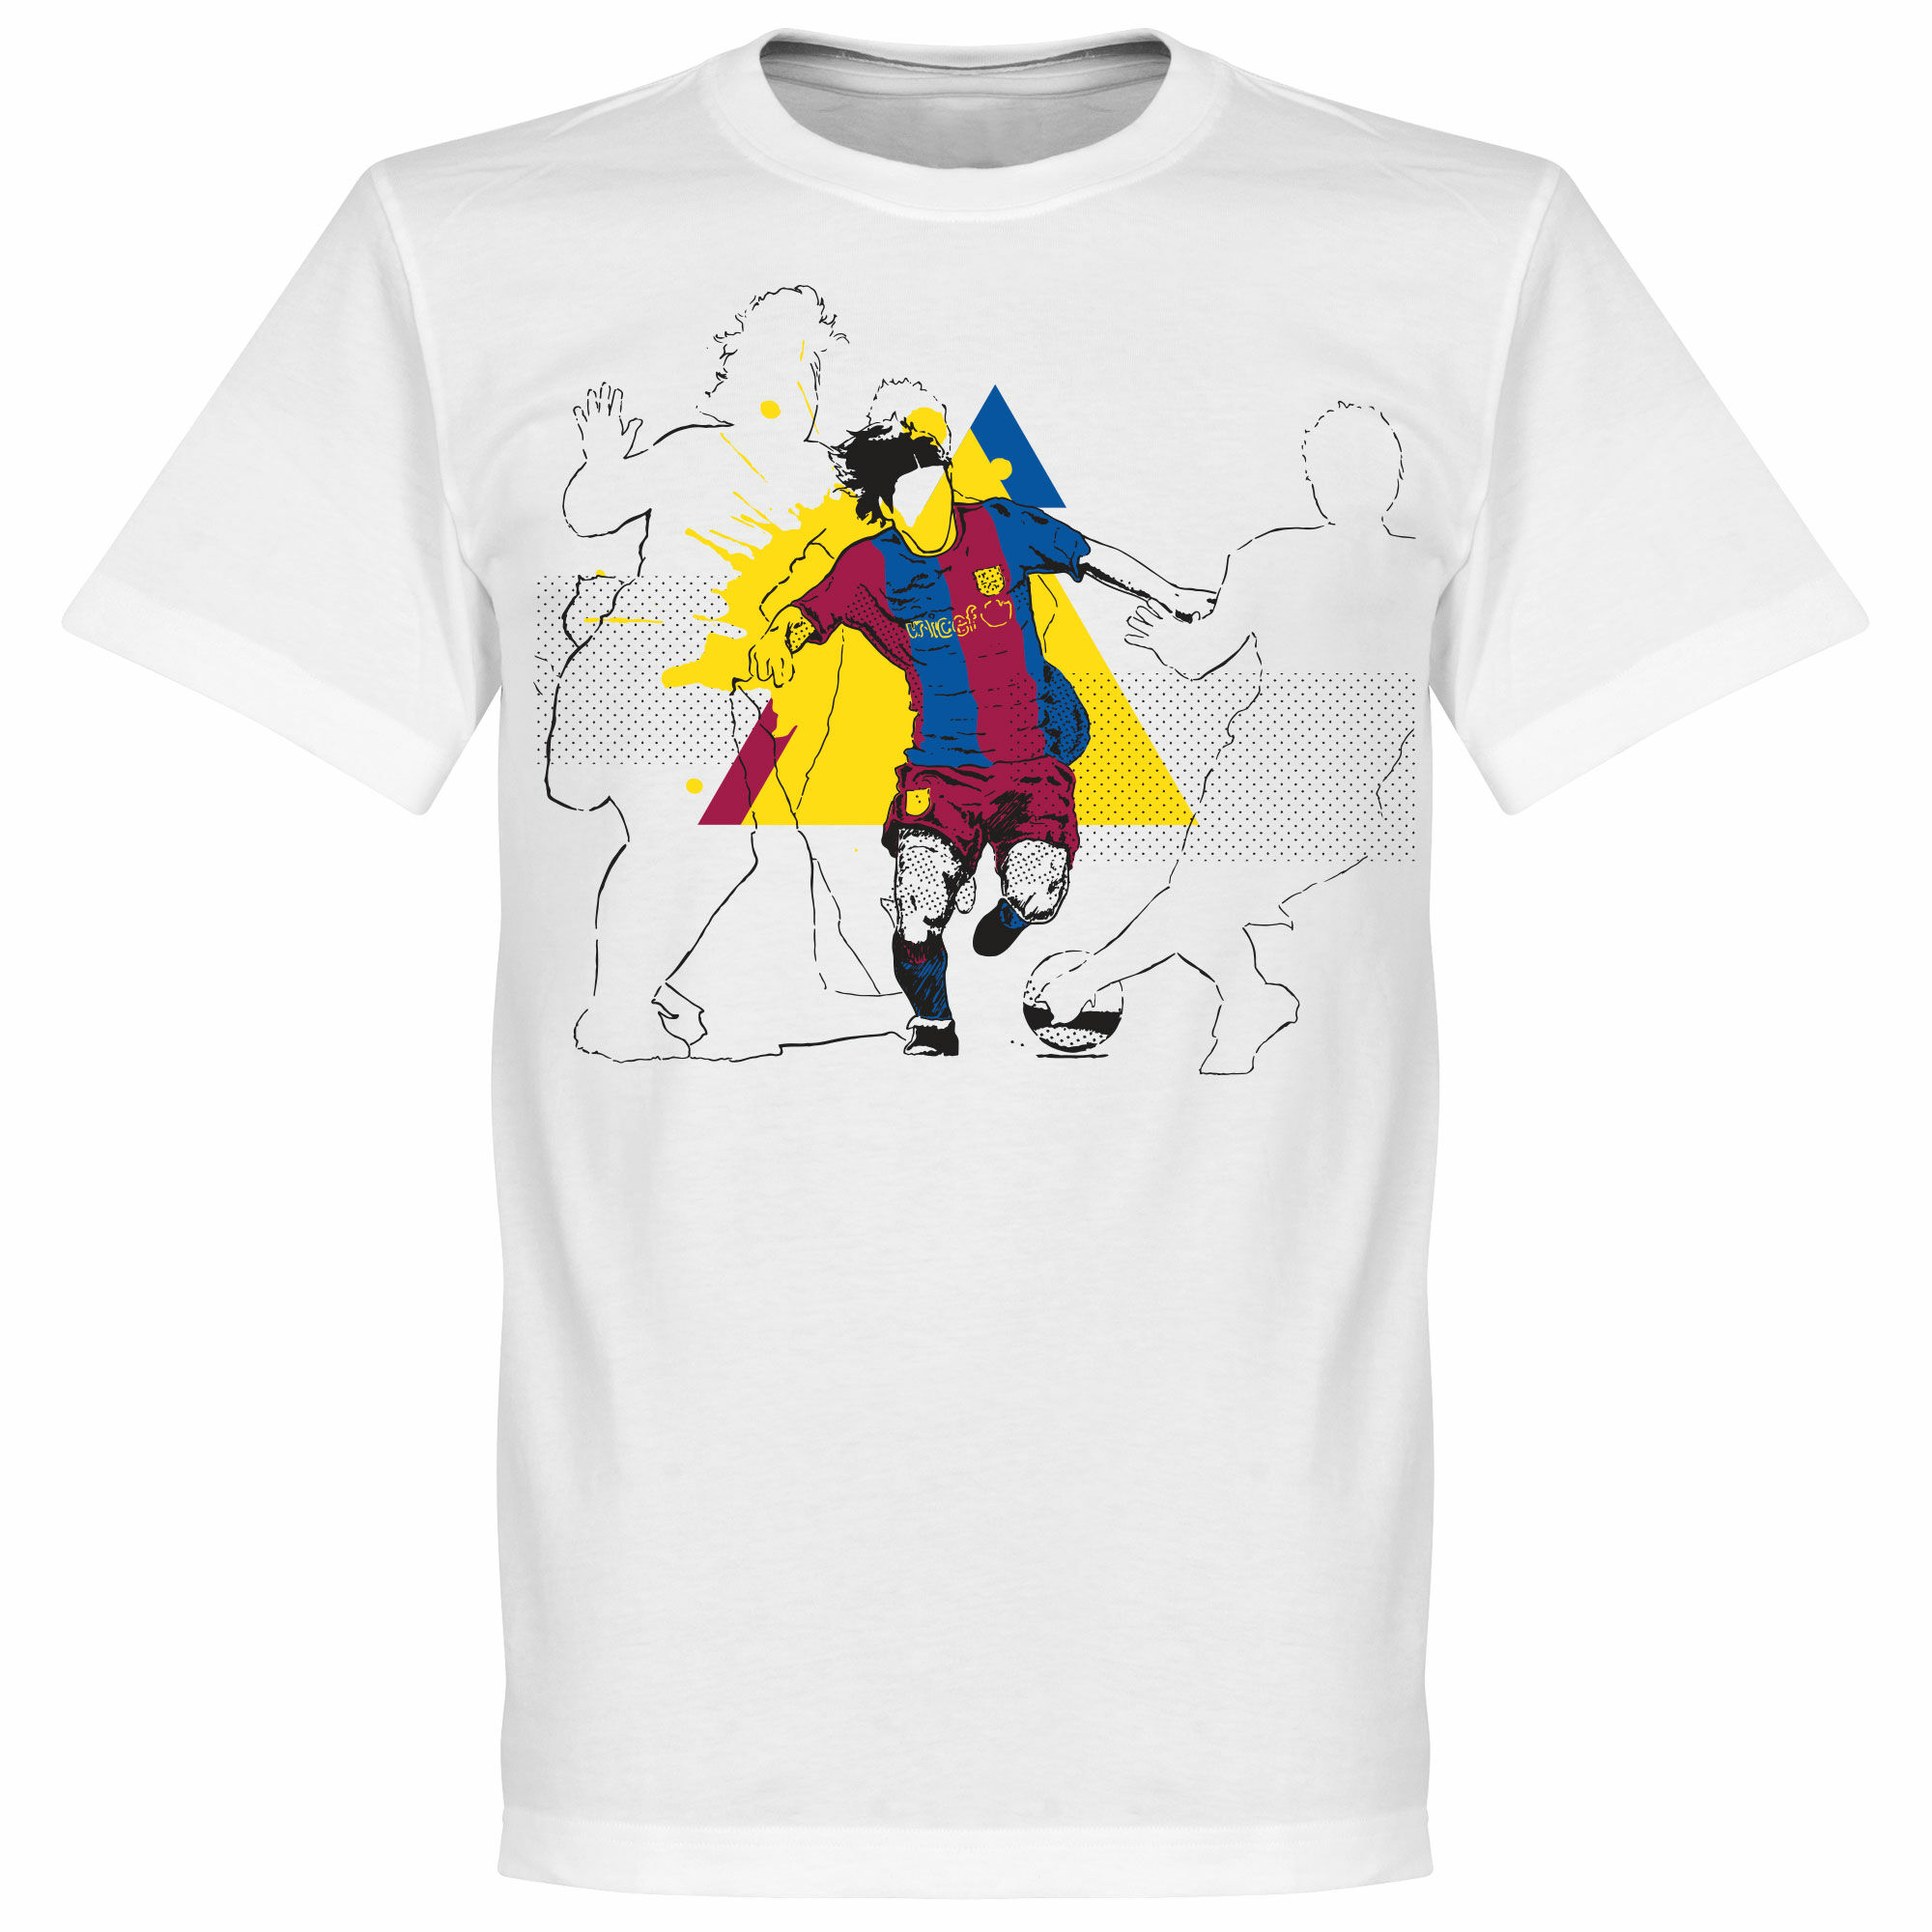 Barcelona - Tričko "Action Backpost" dětské - bílé, Lionel Messi